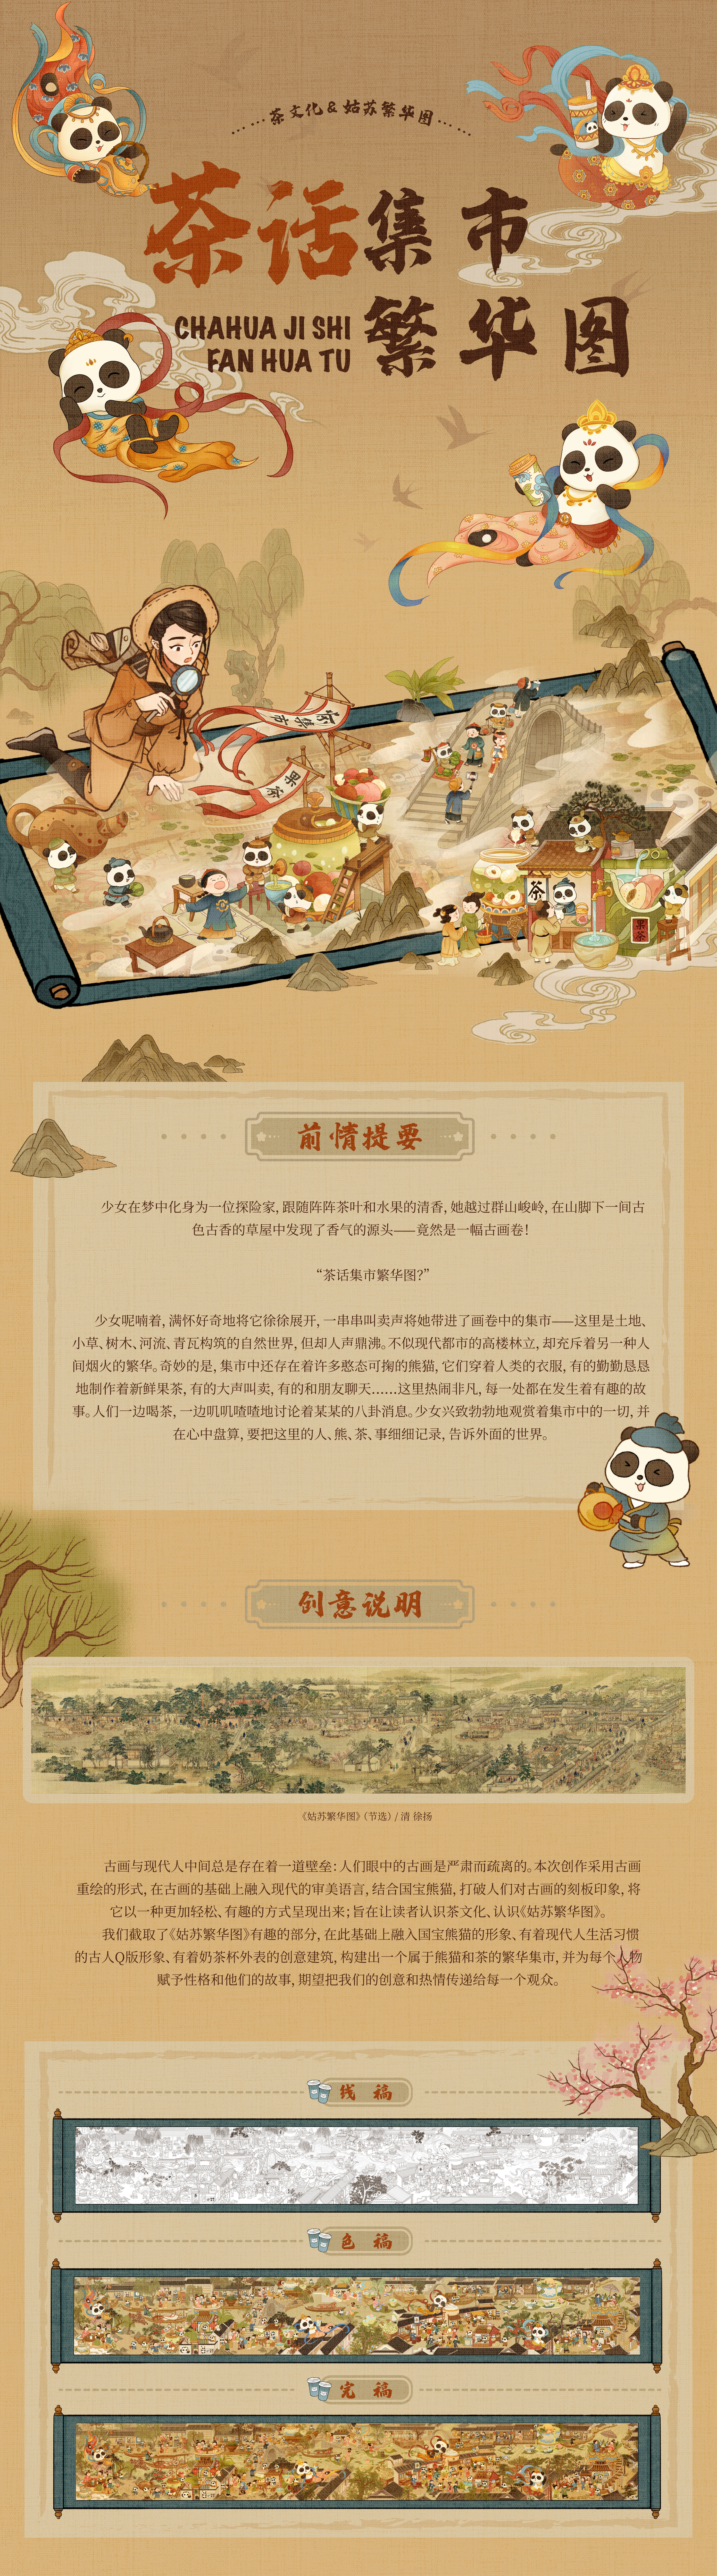 《茶话集市繁华图》——奶茶文化x《姑苏繁华图》